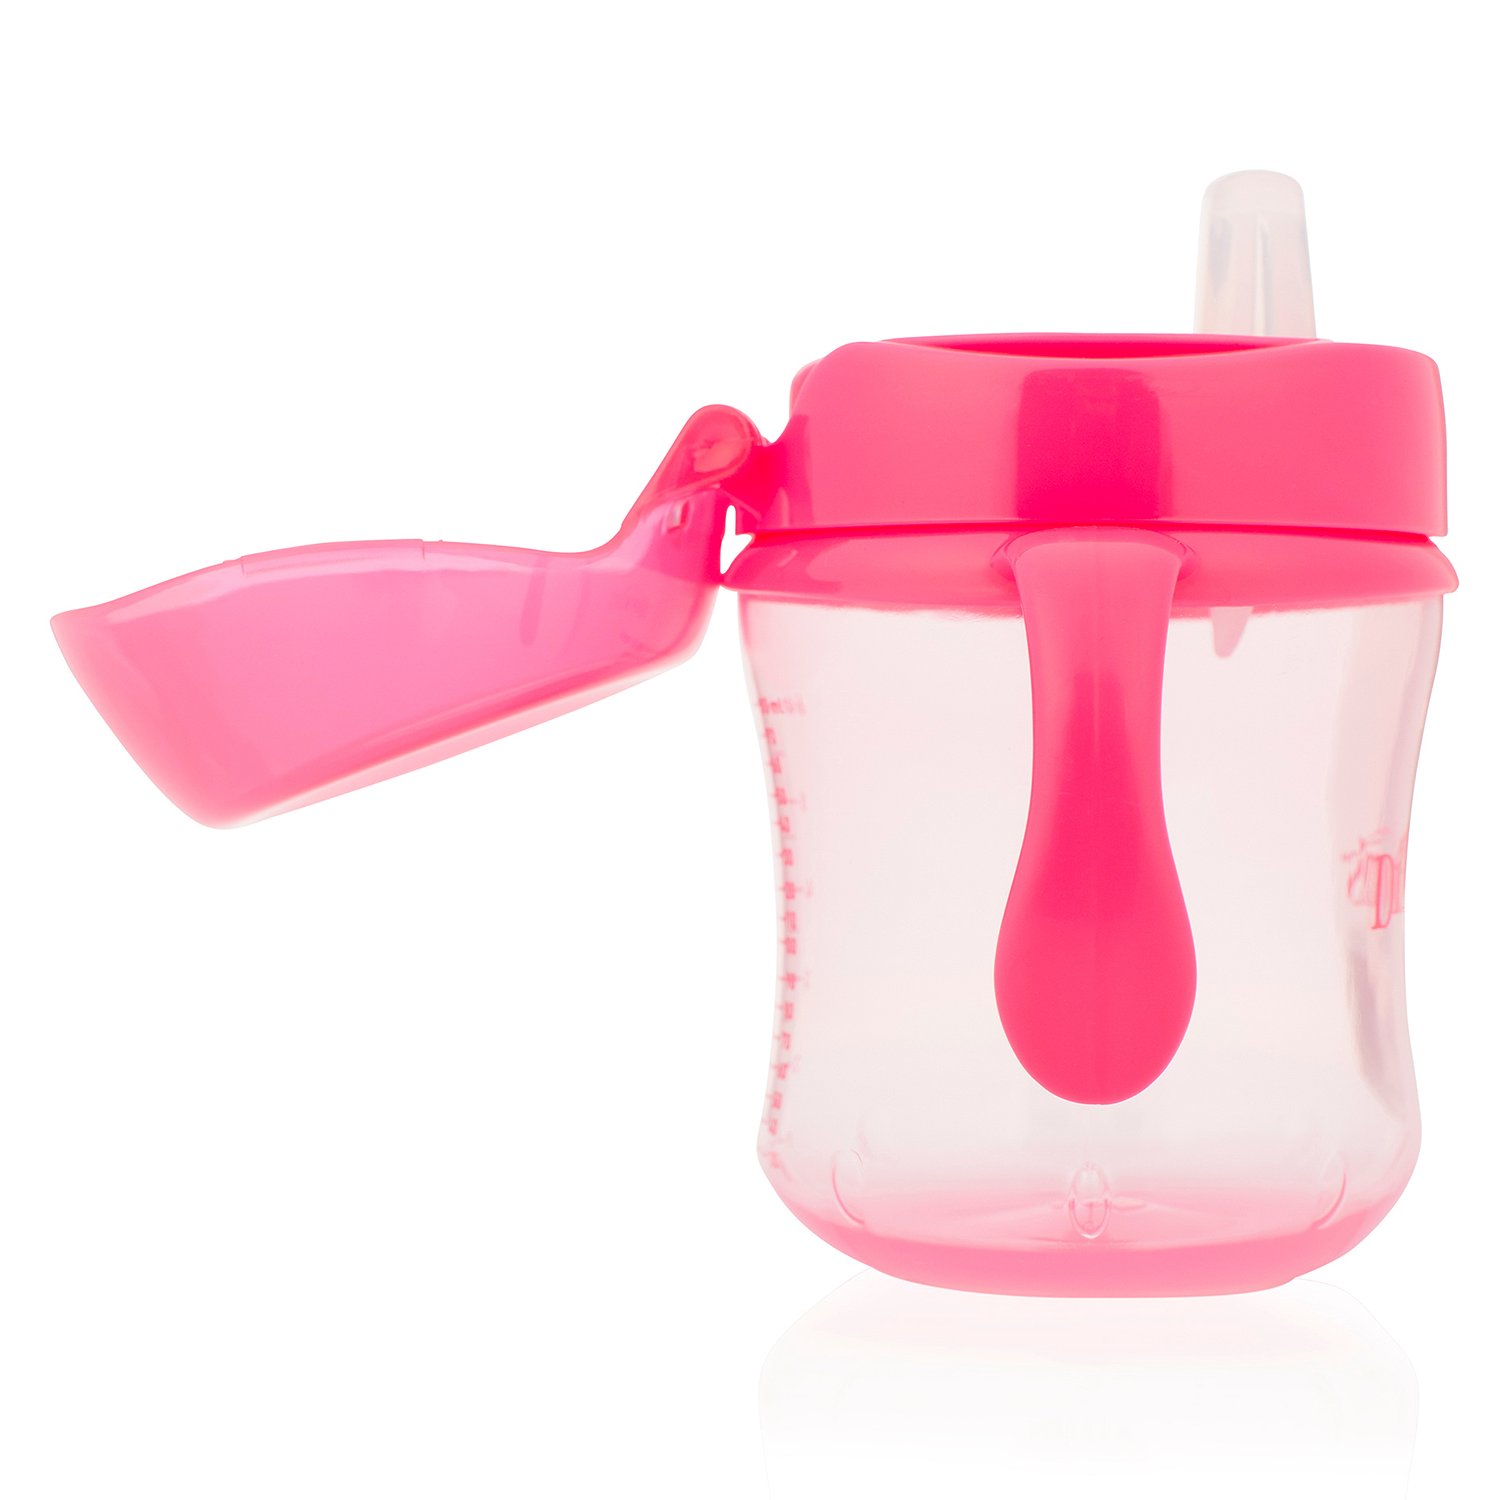 Чашка-непроливайка с мягким носиком, ручками и откидывающейся крышкой, 180 мл, 6+ месяцев, цвет розовый  